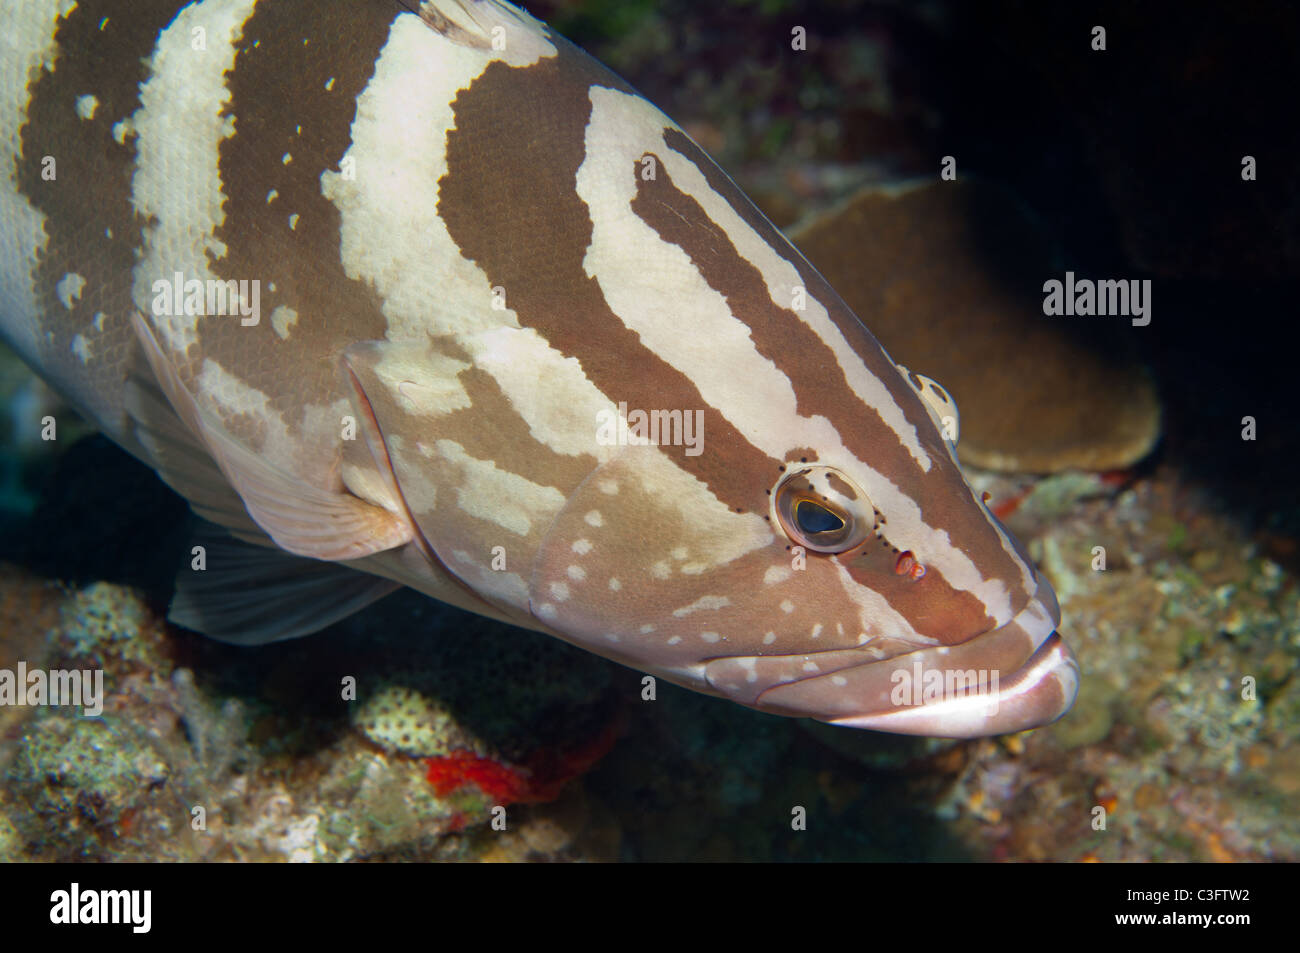 Cernie Nassau si trovano comunemente reef predatori incontrati da gli amanti delle immersioni e dello snorkeling. Foto Stock